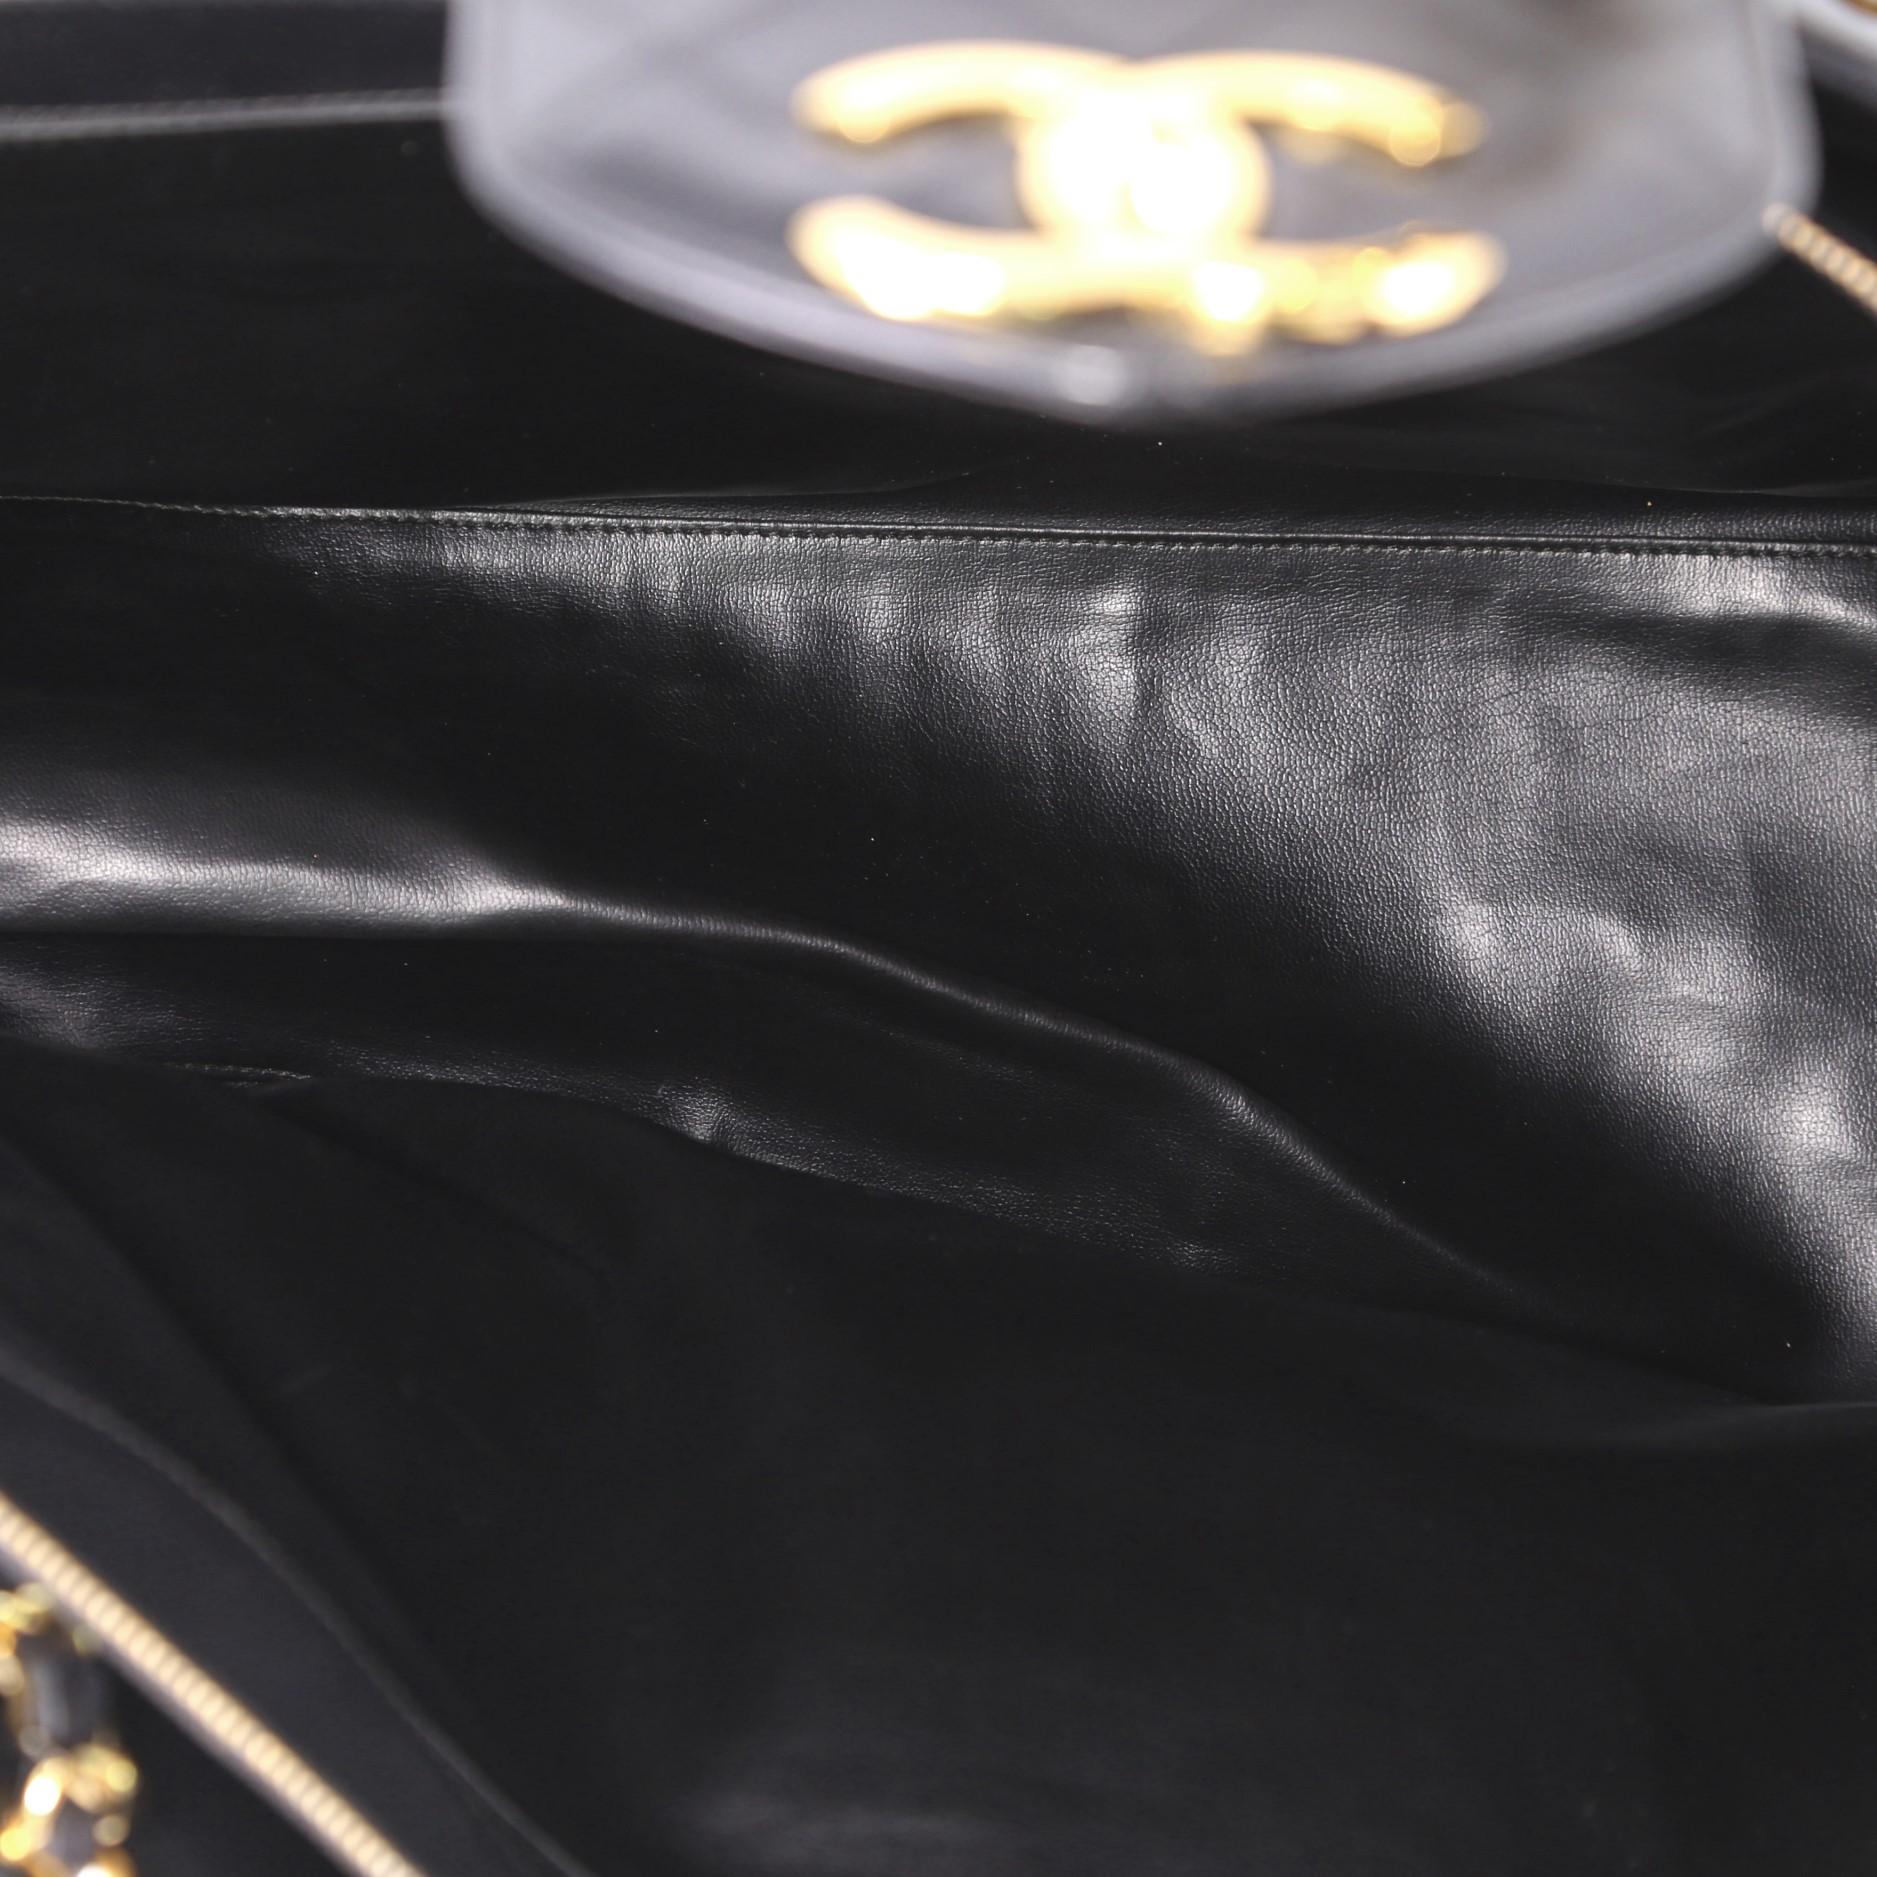  Chanel Vintage Supermodel Weekender Bag Quilted Leather Large 2